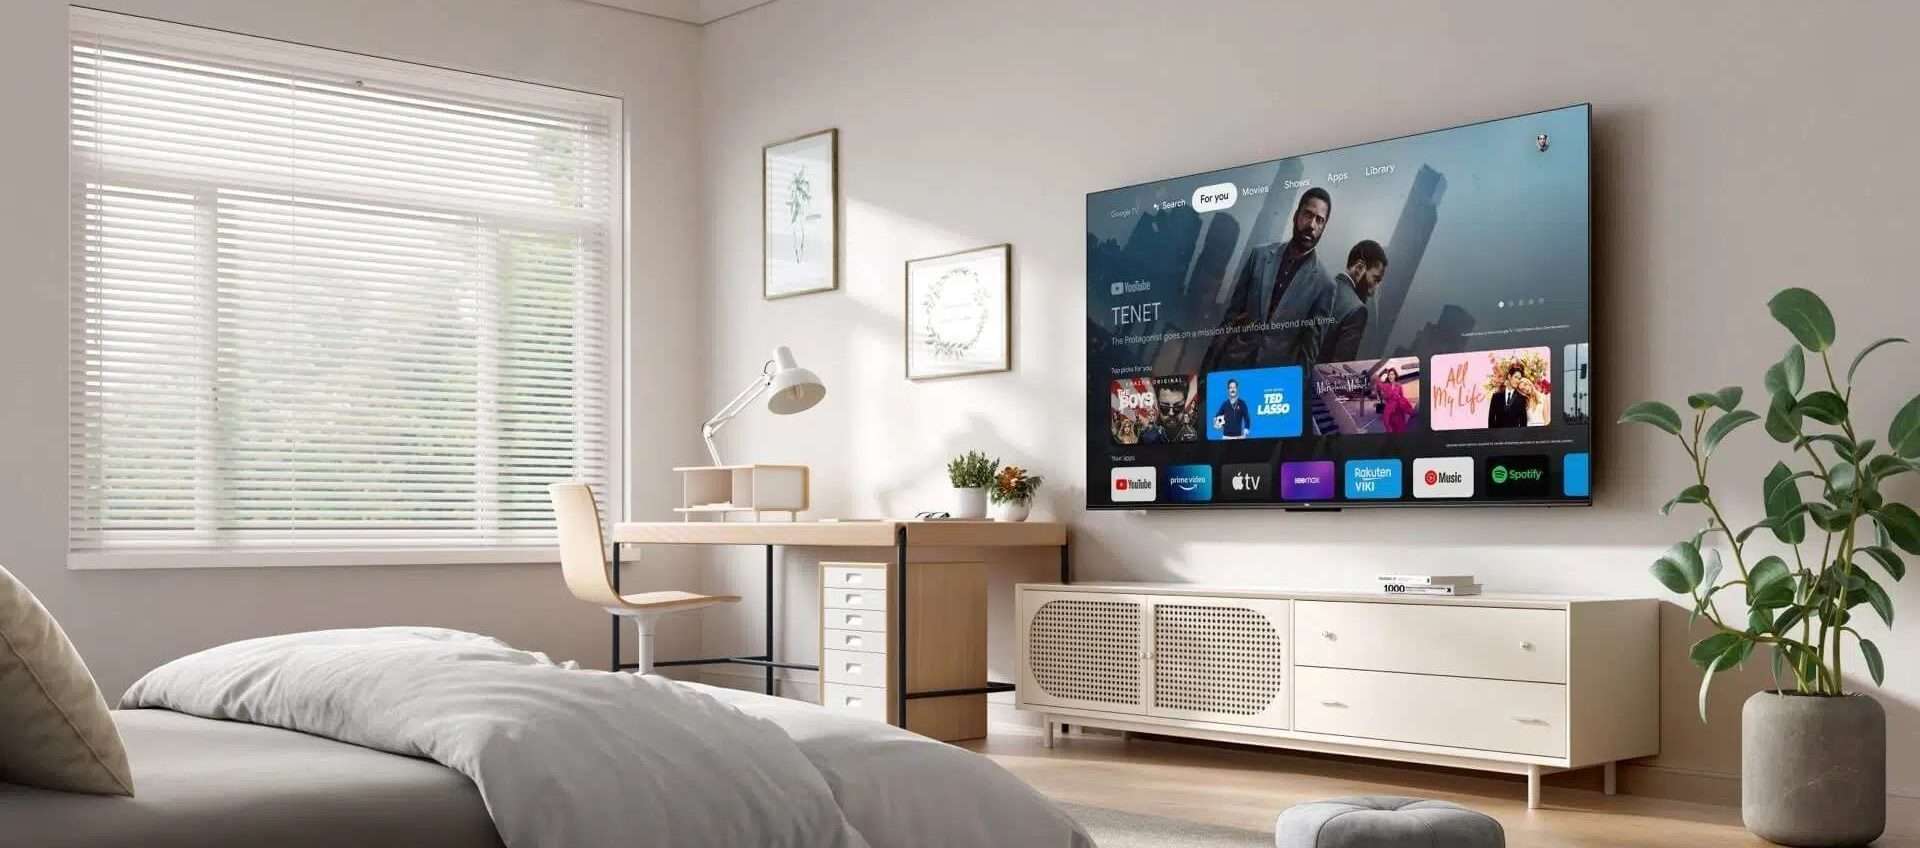 Smart TV QLED in offerta a 299€ su Amazon: è il modello da comprare (anche in 5 rate)